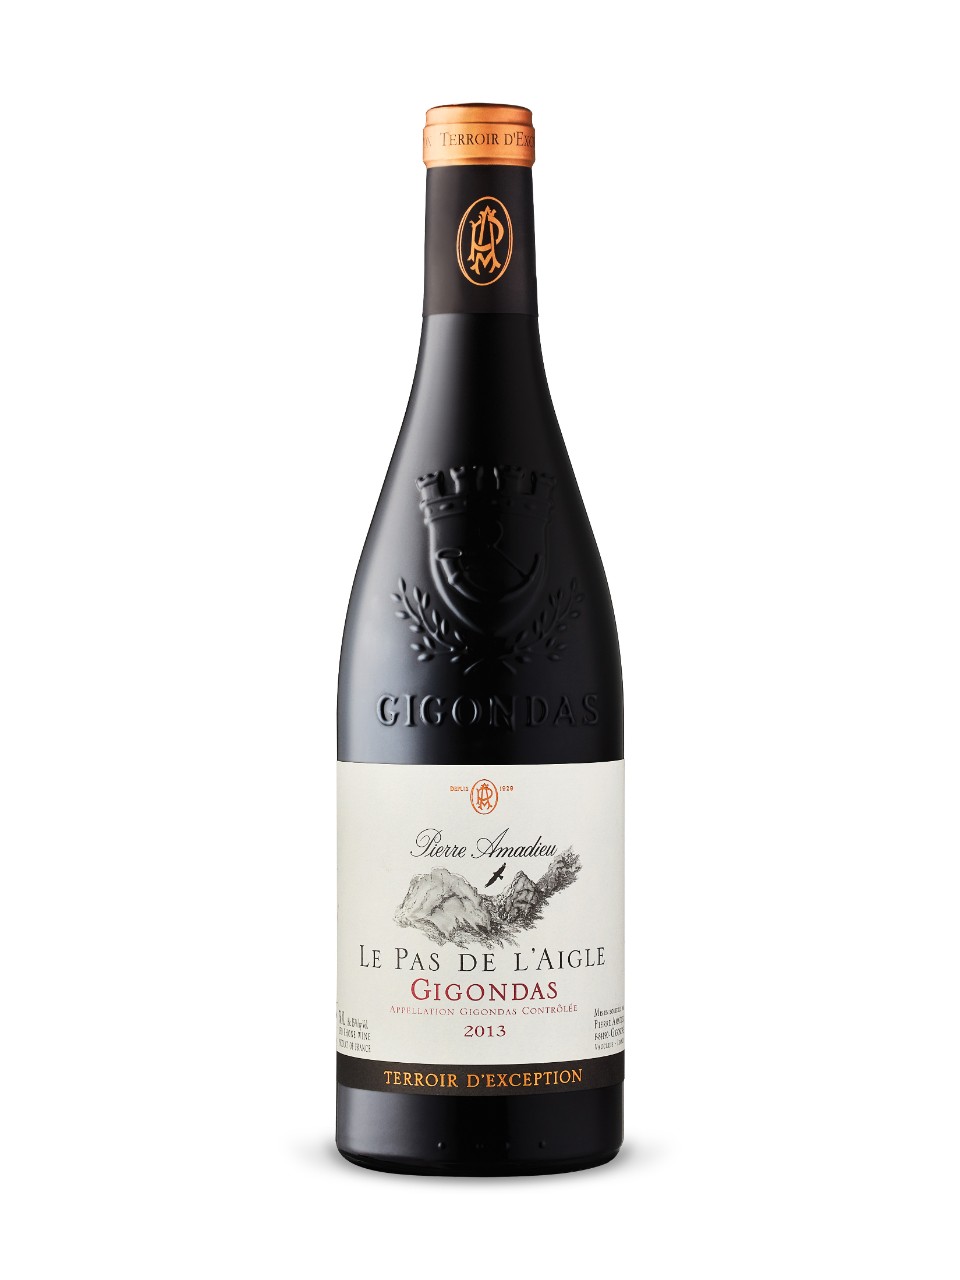 Wine Review: Pierre Amadieu Gigondas Le pas de L’Aigle, 2013